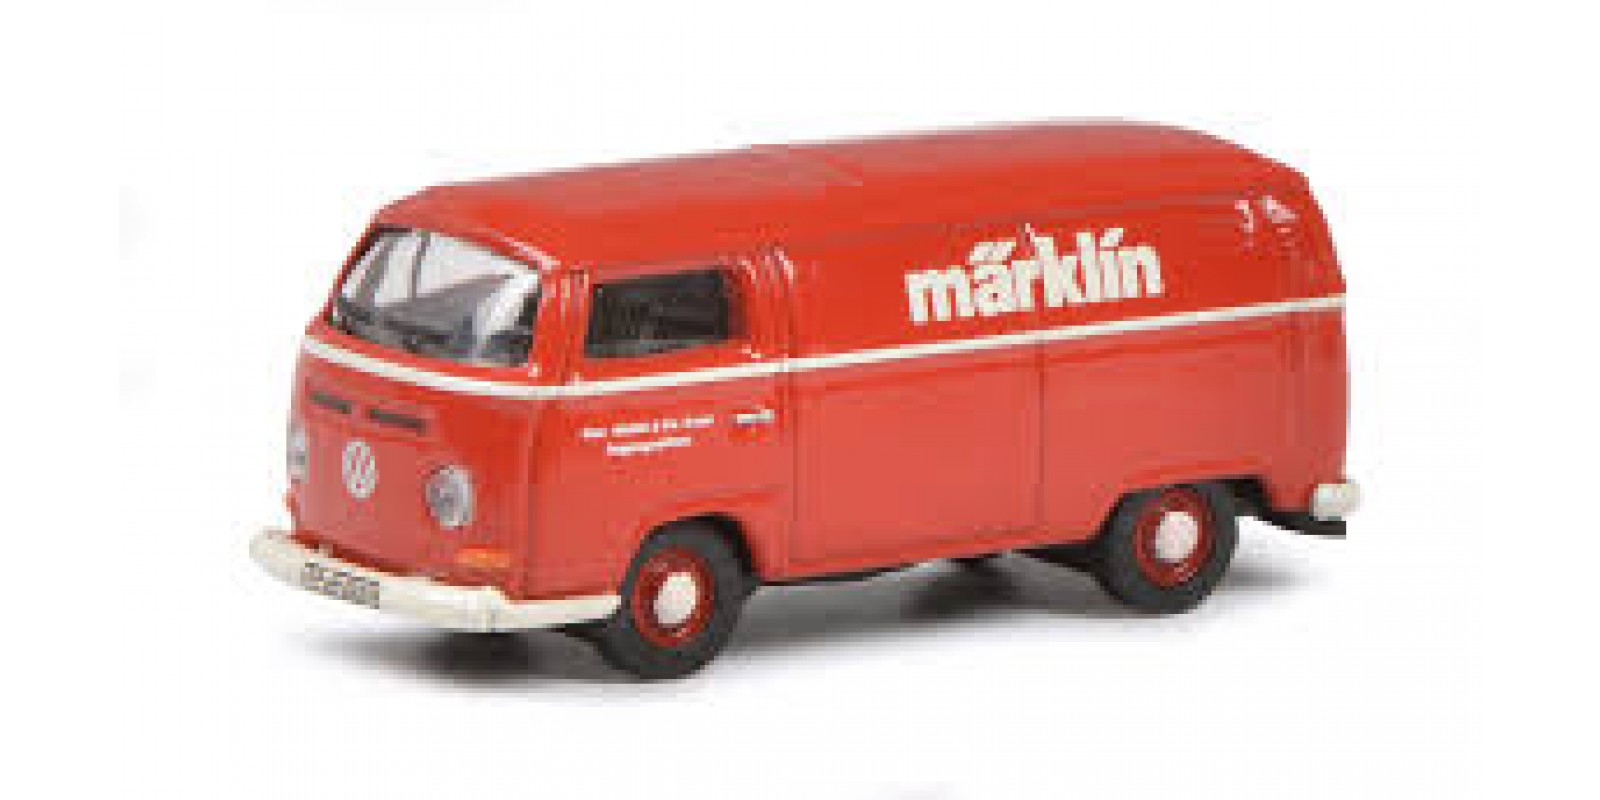 SC452653804 VW T3a Van "Marklin" MHI